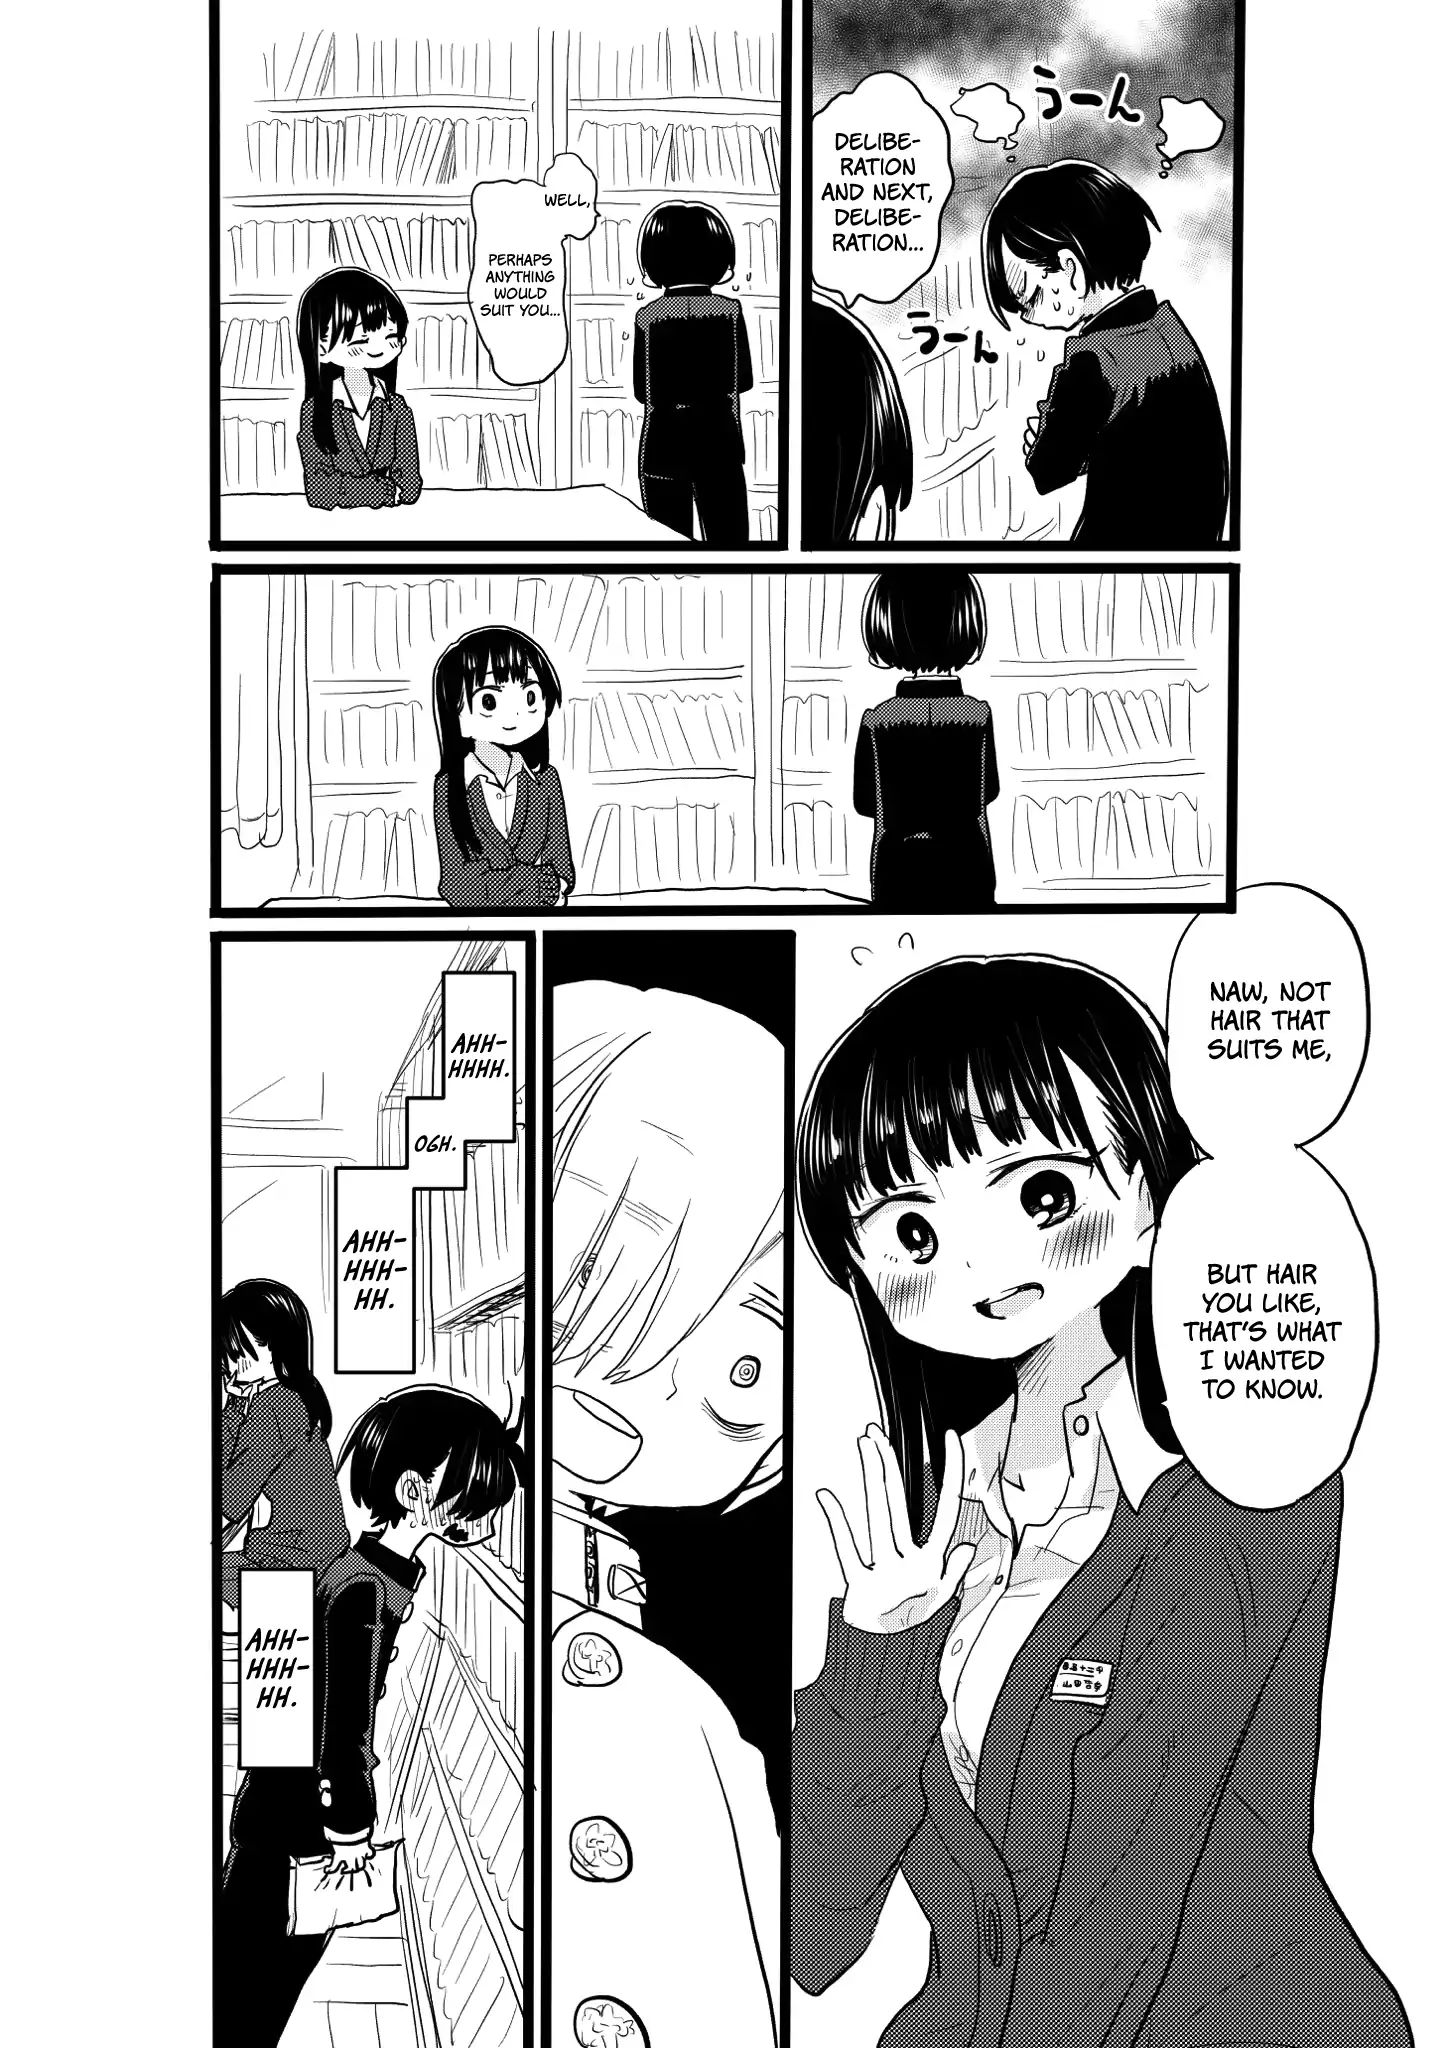 Boku no Kokoro no Yabai Yatsu Ch.19 Page 1 - Mangago